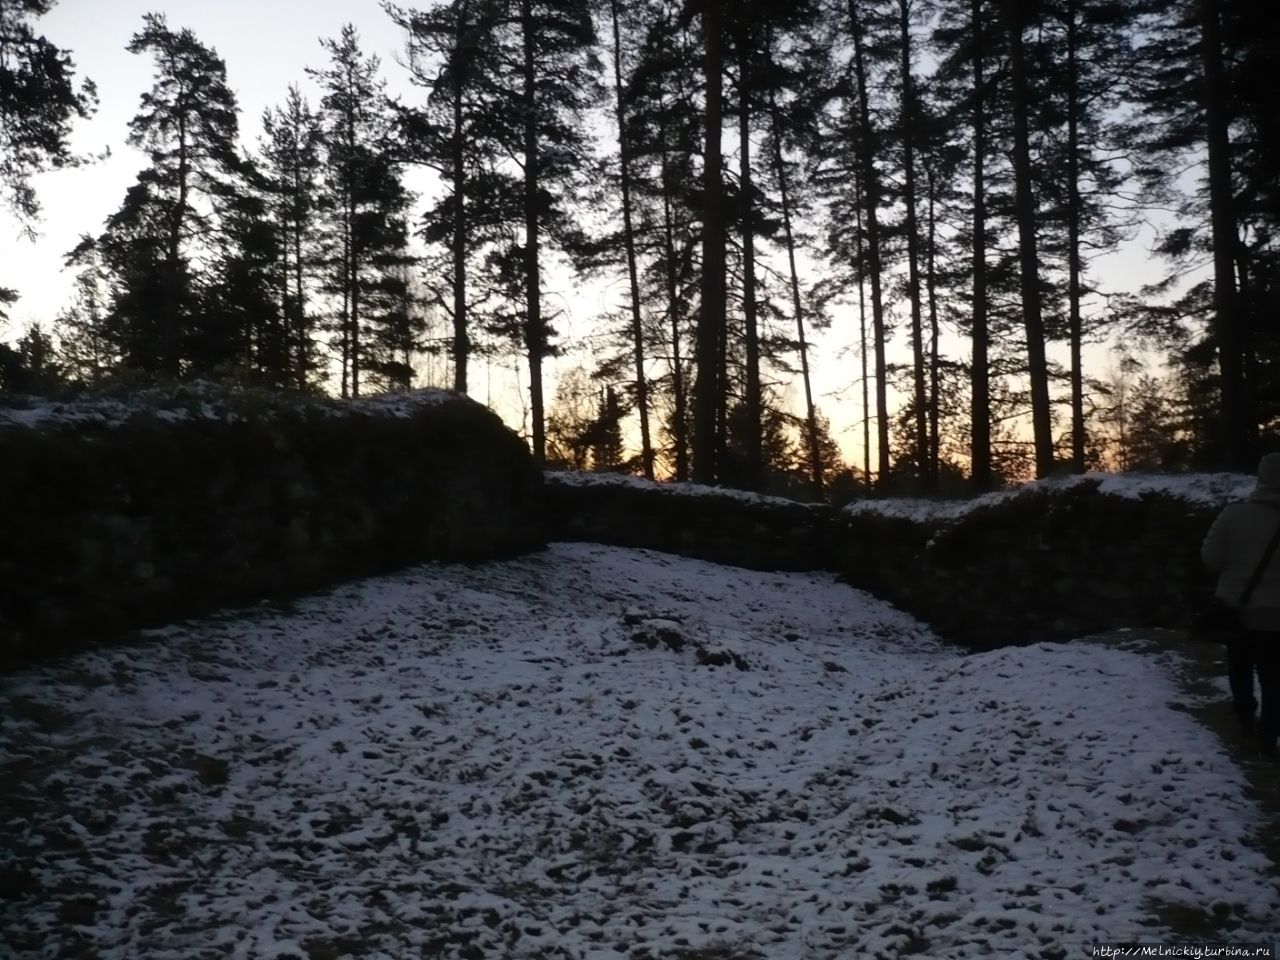 Замок Брахелинна Ристиина, Финляндия